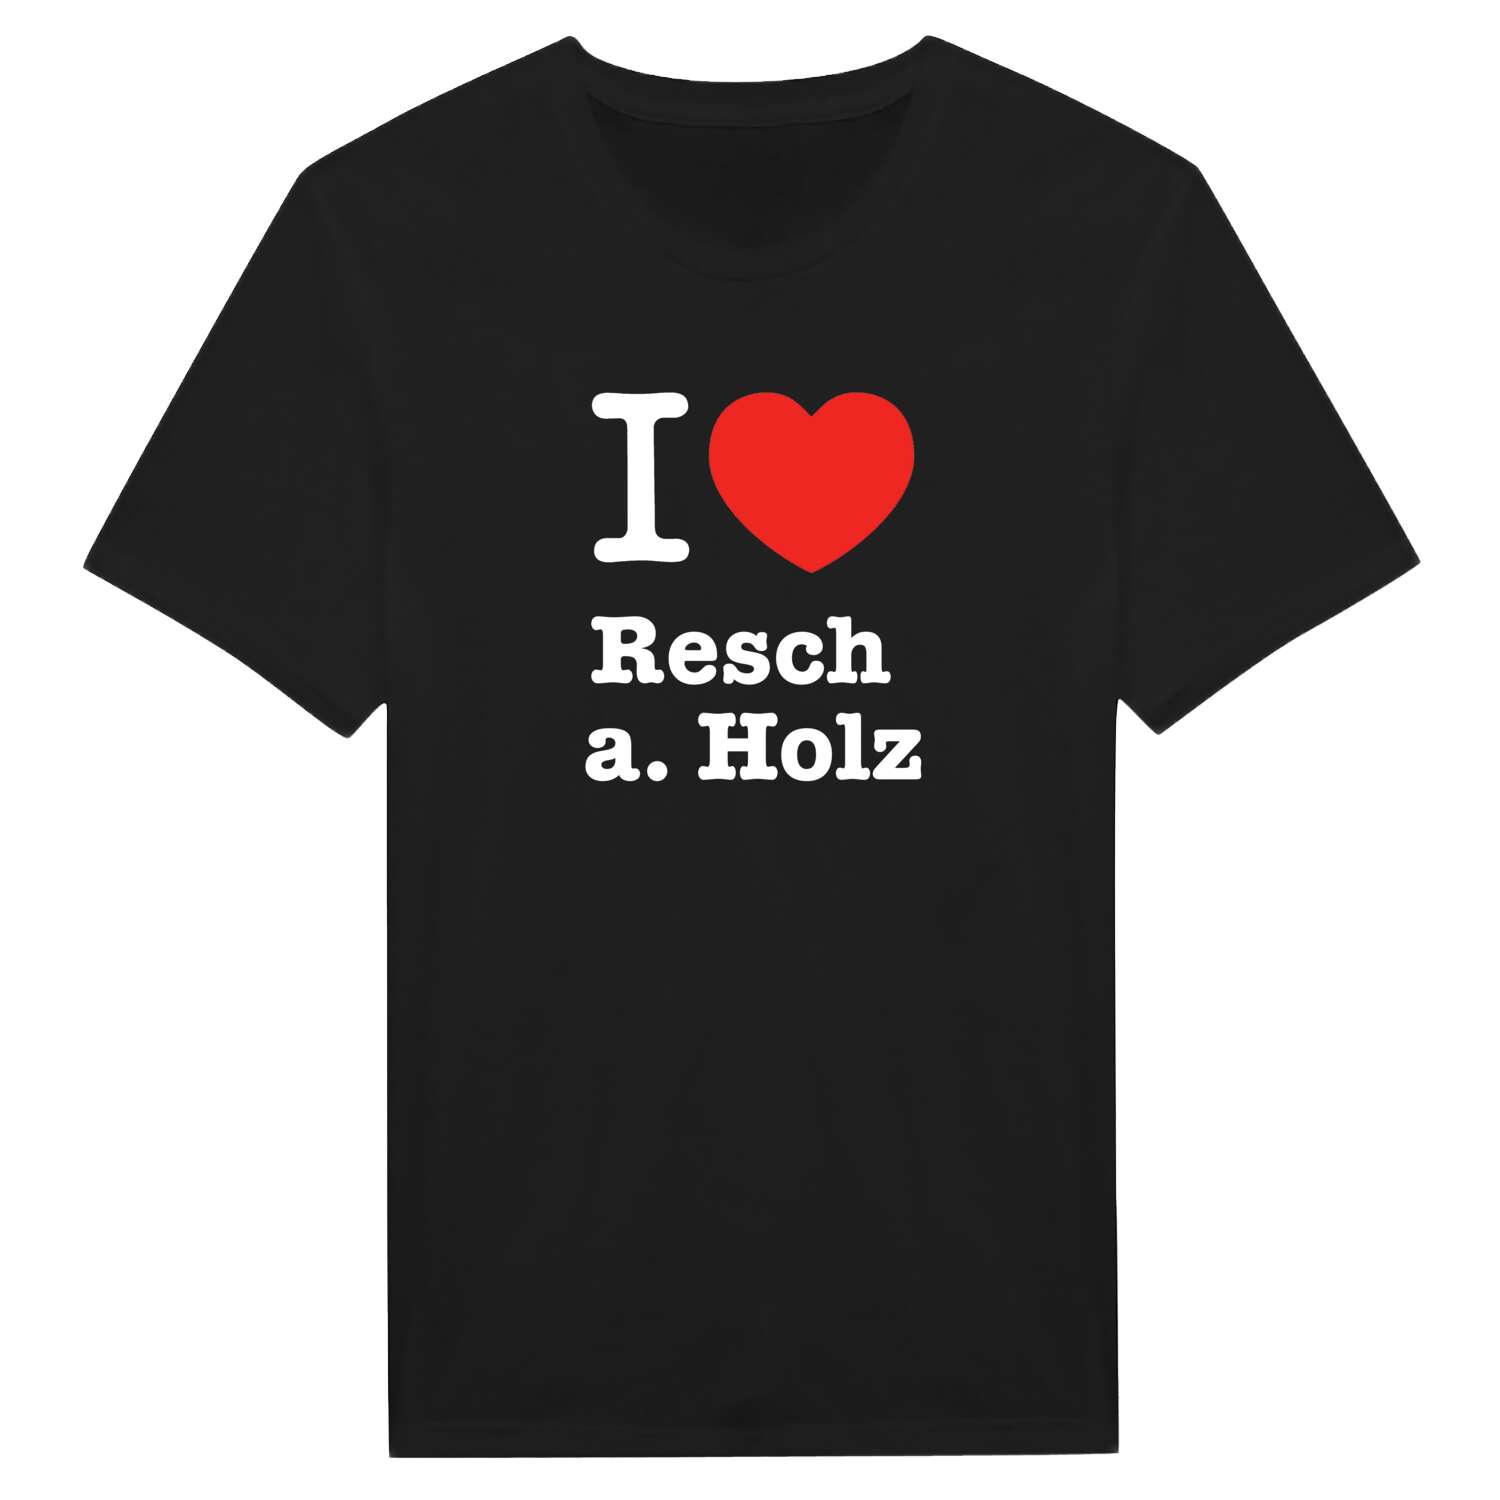 Resch a. Holz T-Shirt »I love«